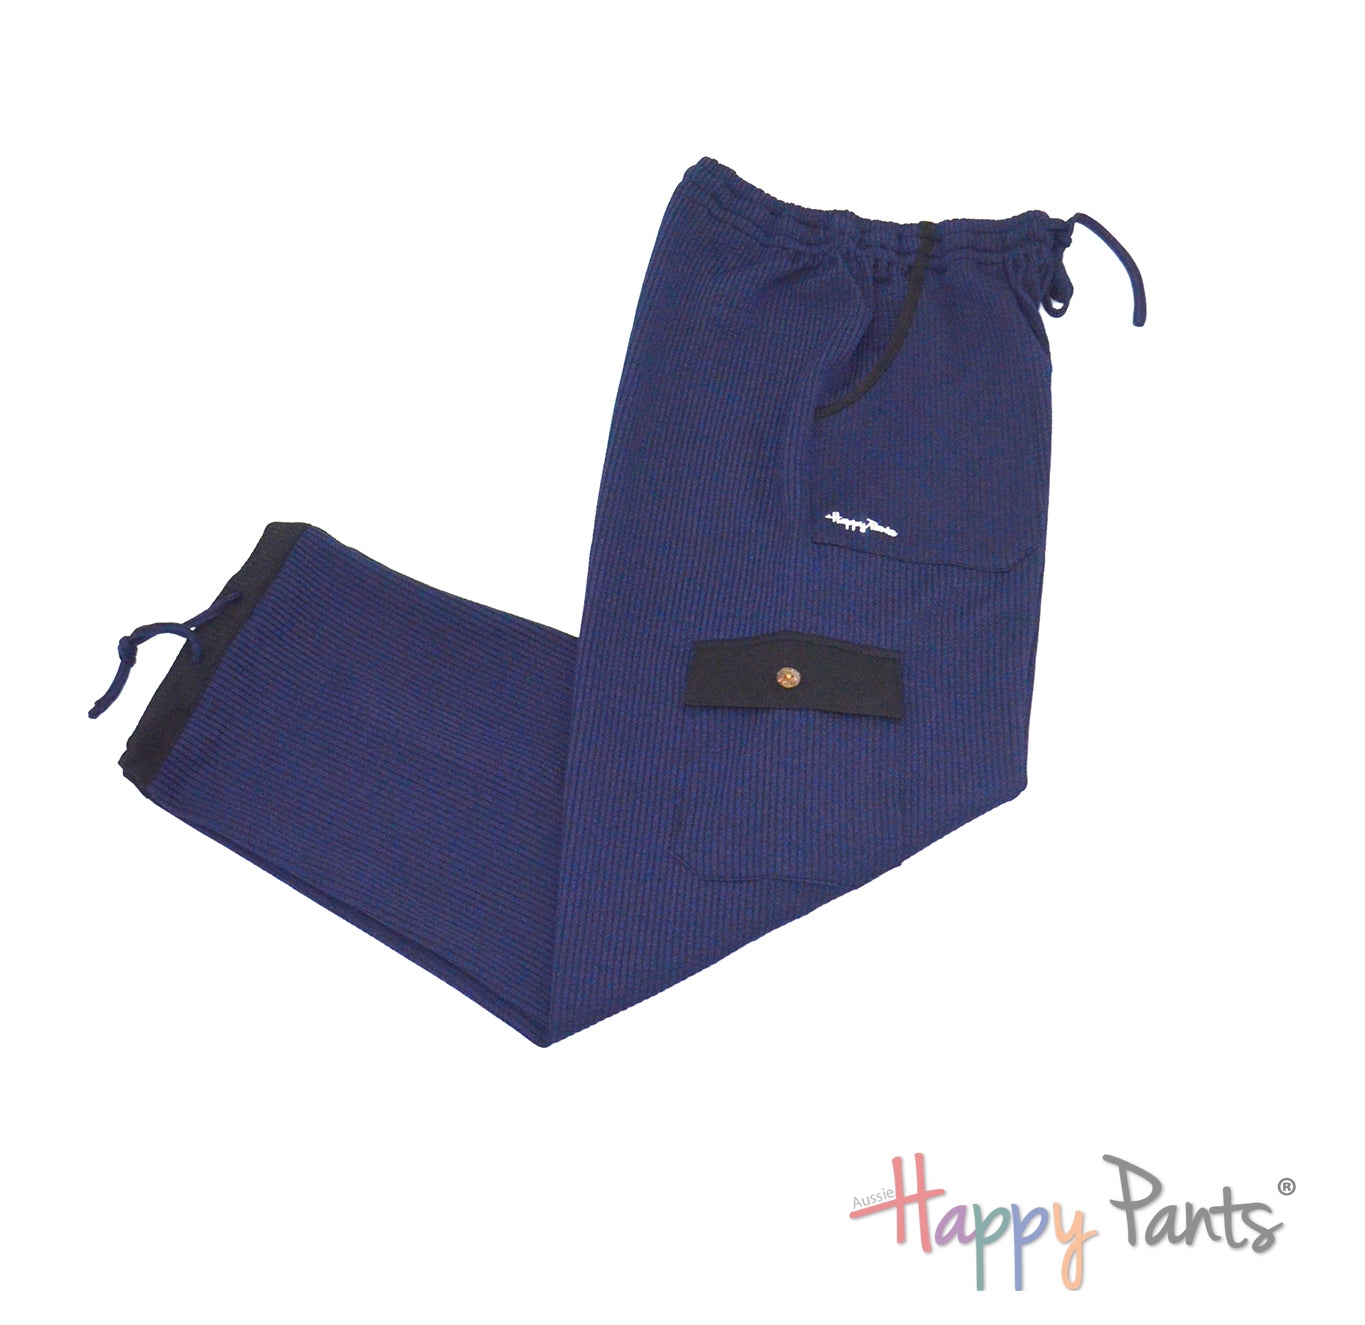 Colourful pants for men cotton joggers comfortable men’s plus sizes